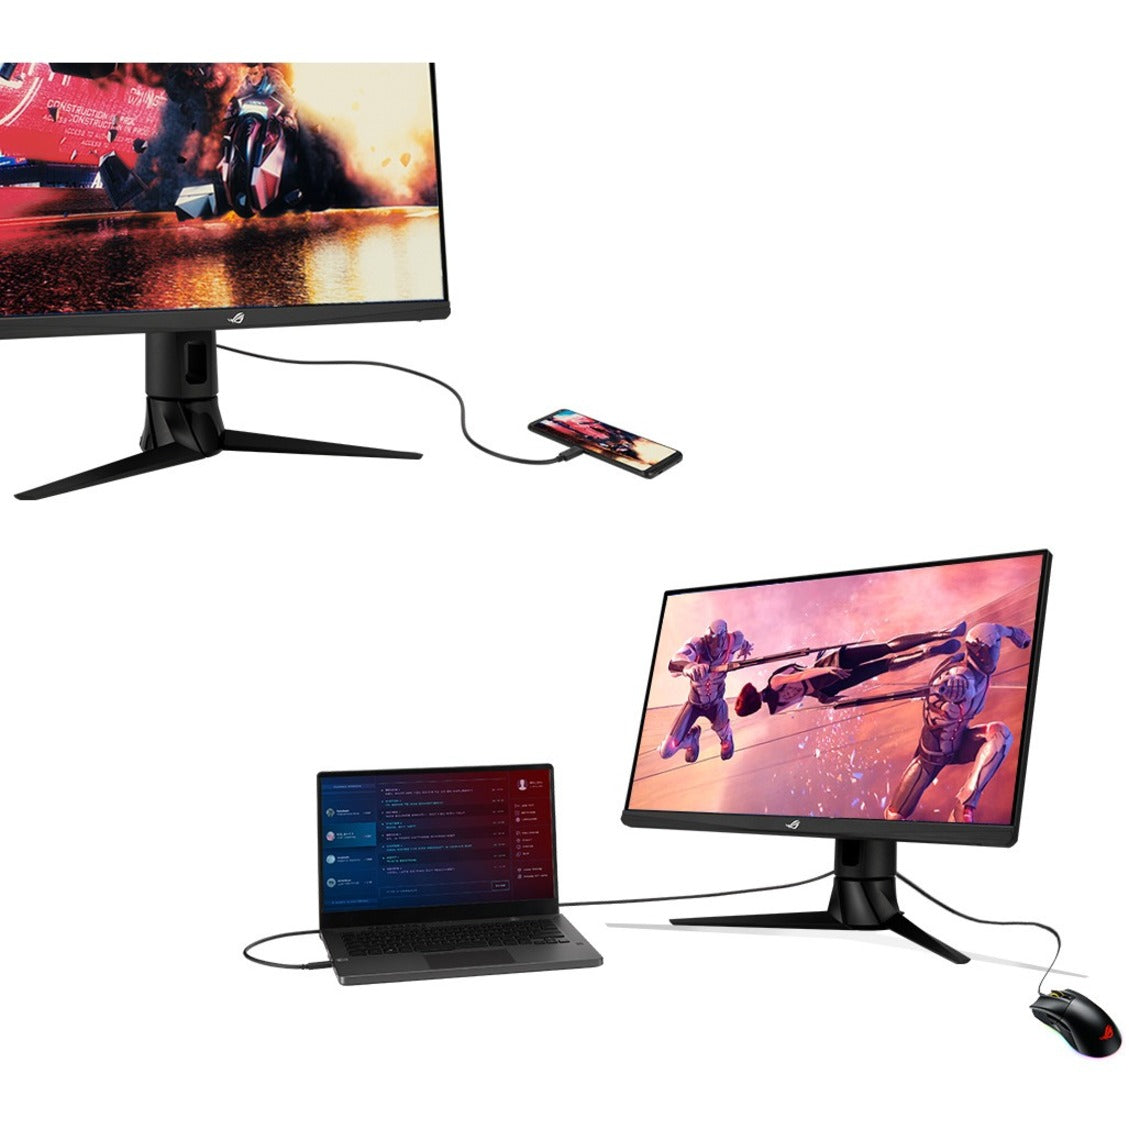 Asus XG249CM ROG Strix 23.8" Gaming LCD Monitor, Full HD, 240Hz, FreeSync Premium